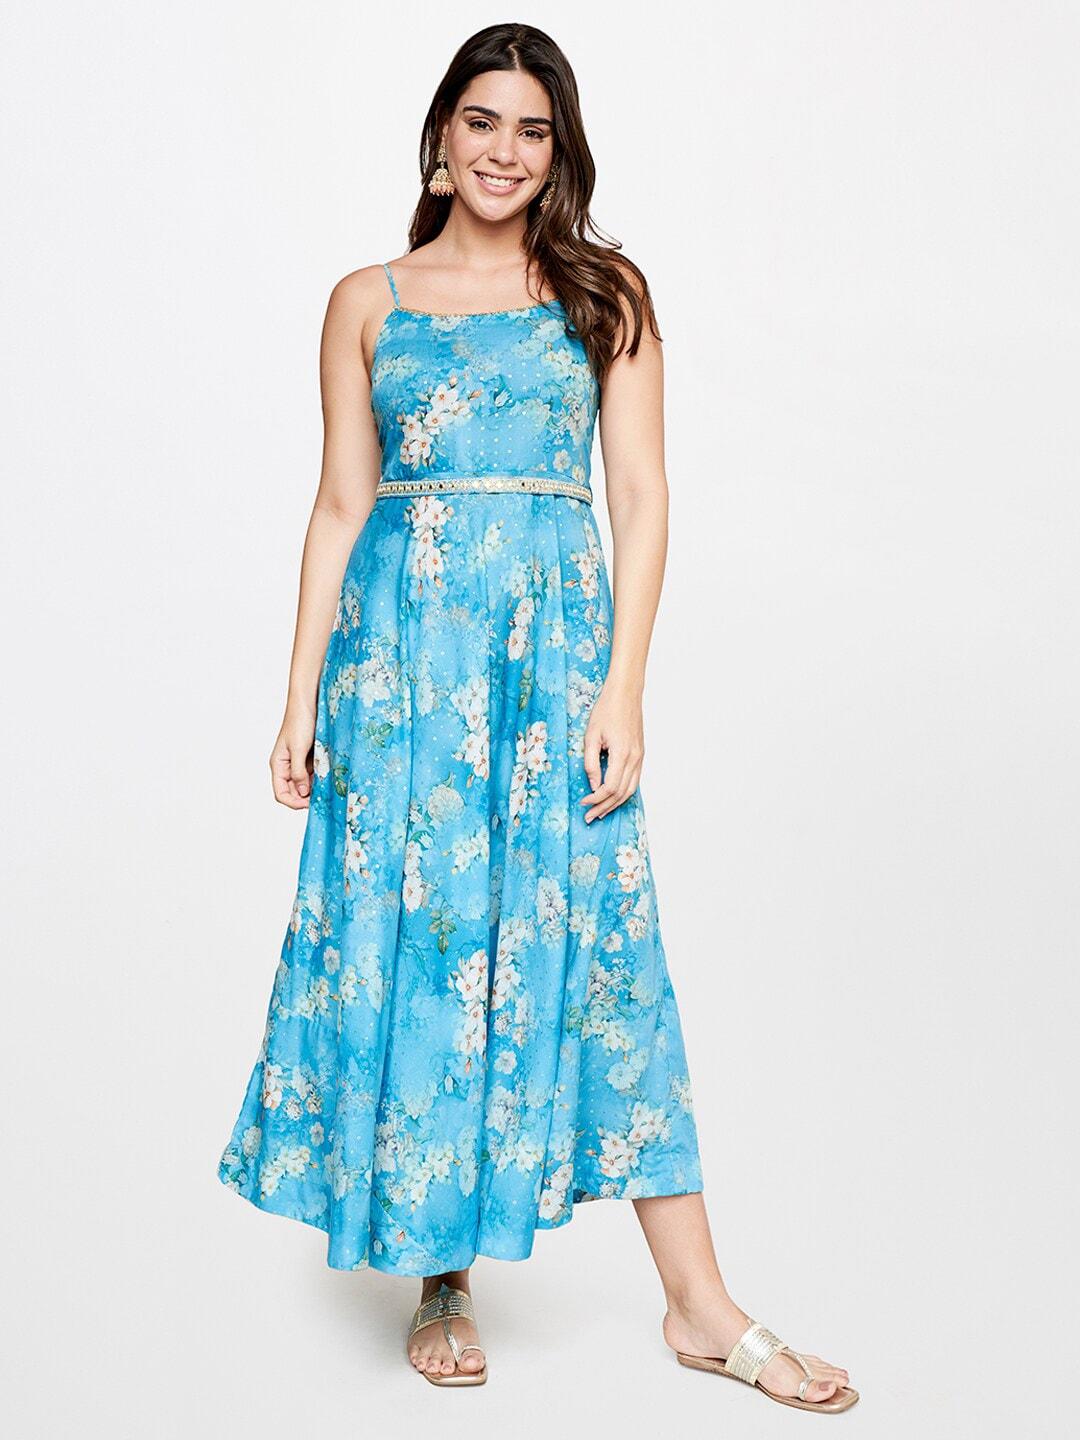 itse-floral-print-a-line-dress